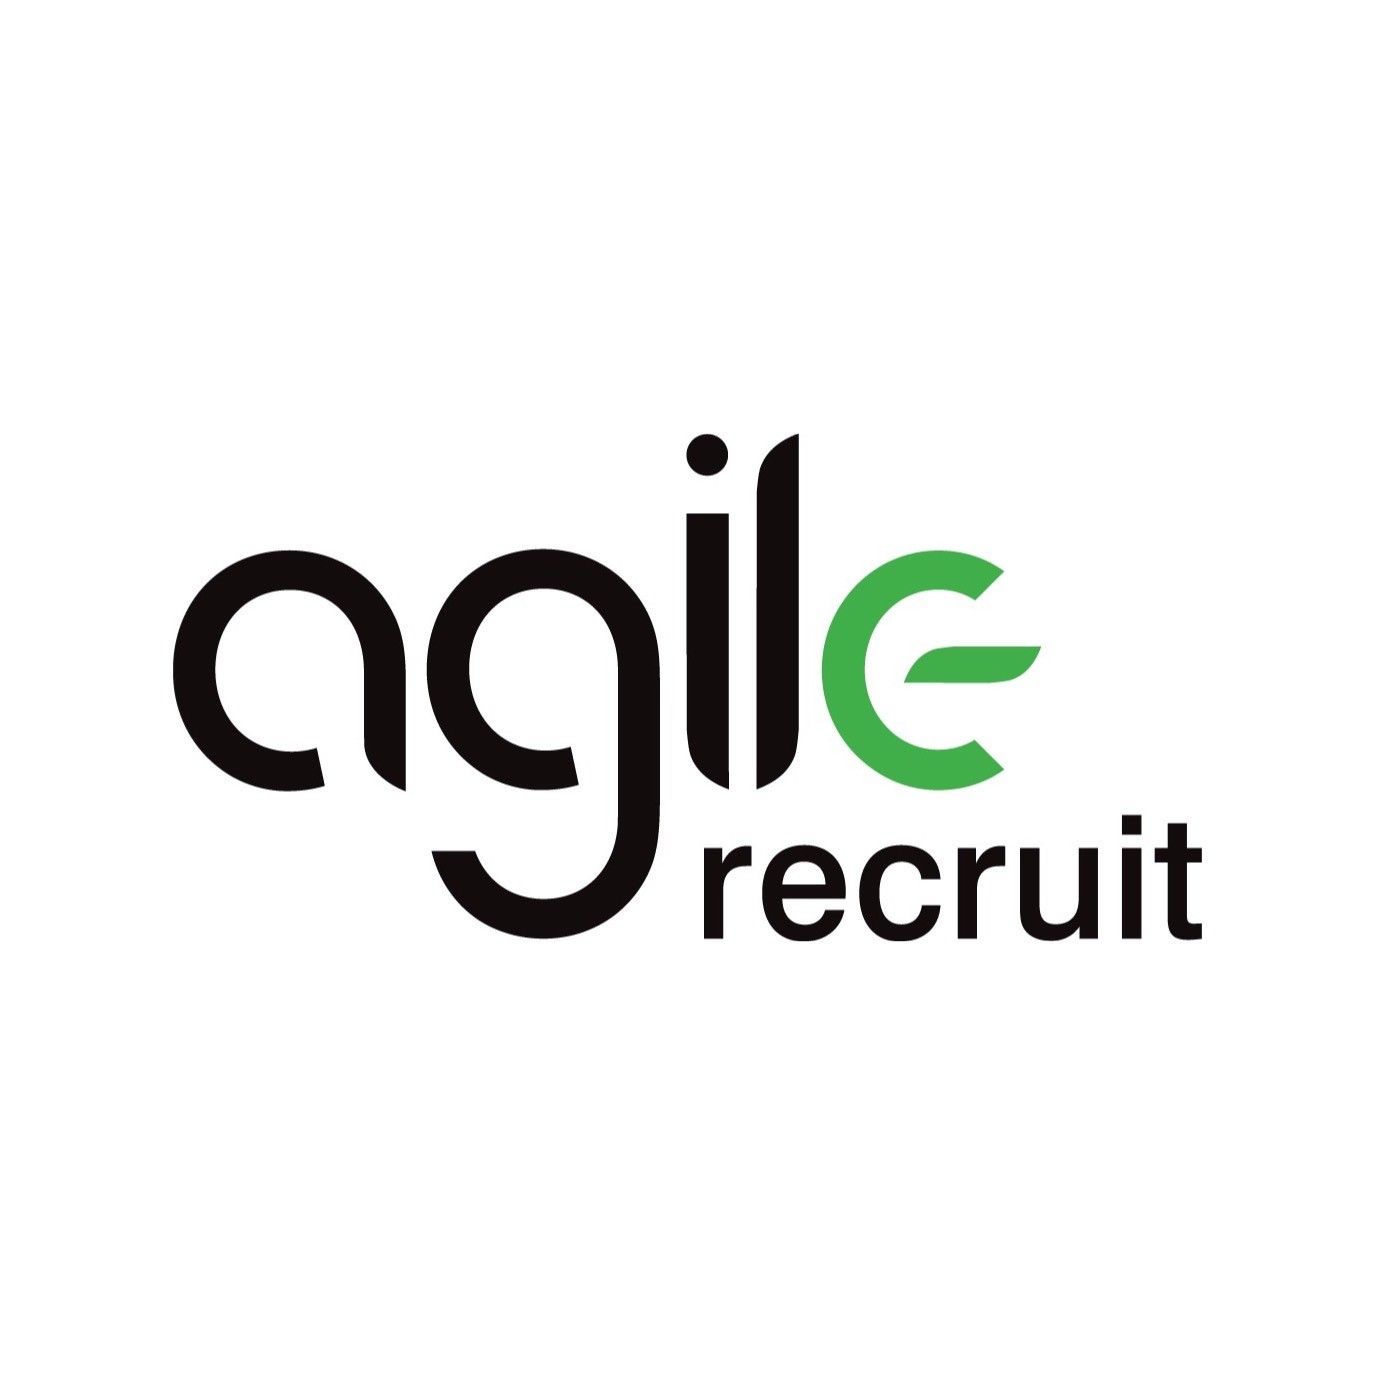 Agile Recruit